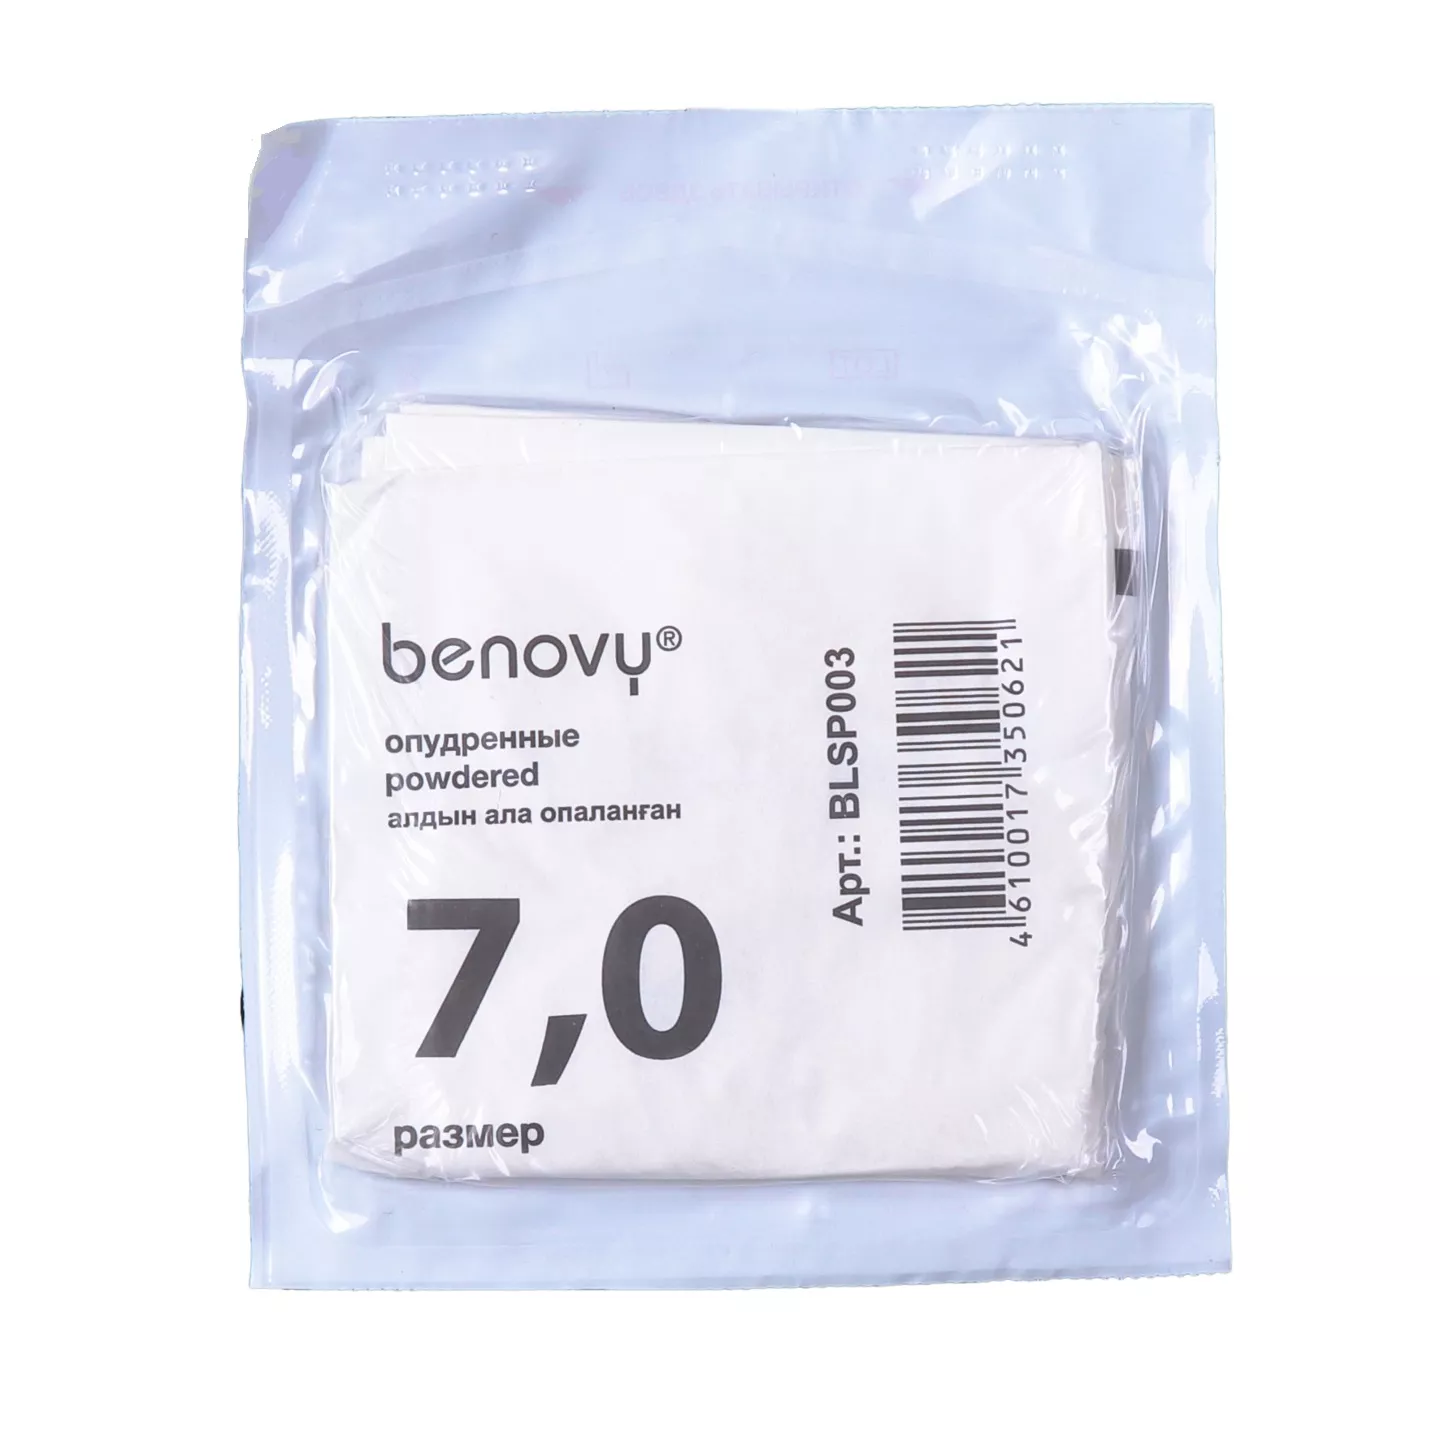 Перчатки BENOVY Термоформ хирургические, размер 7,0 латексные опудренные текстурированные, цвет белый, стерильные